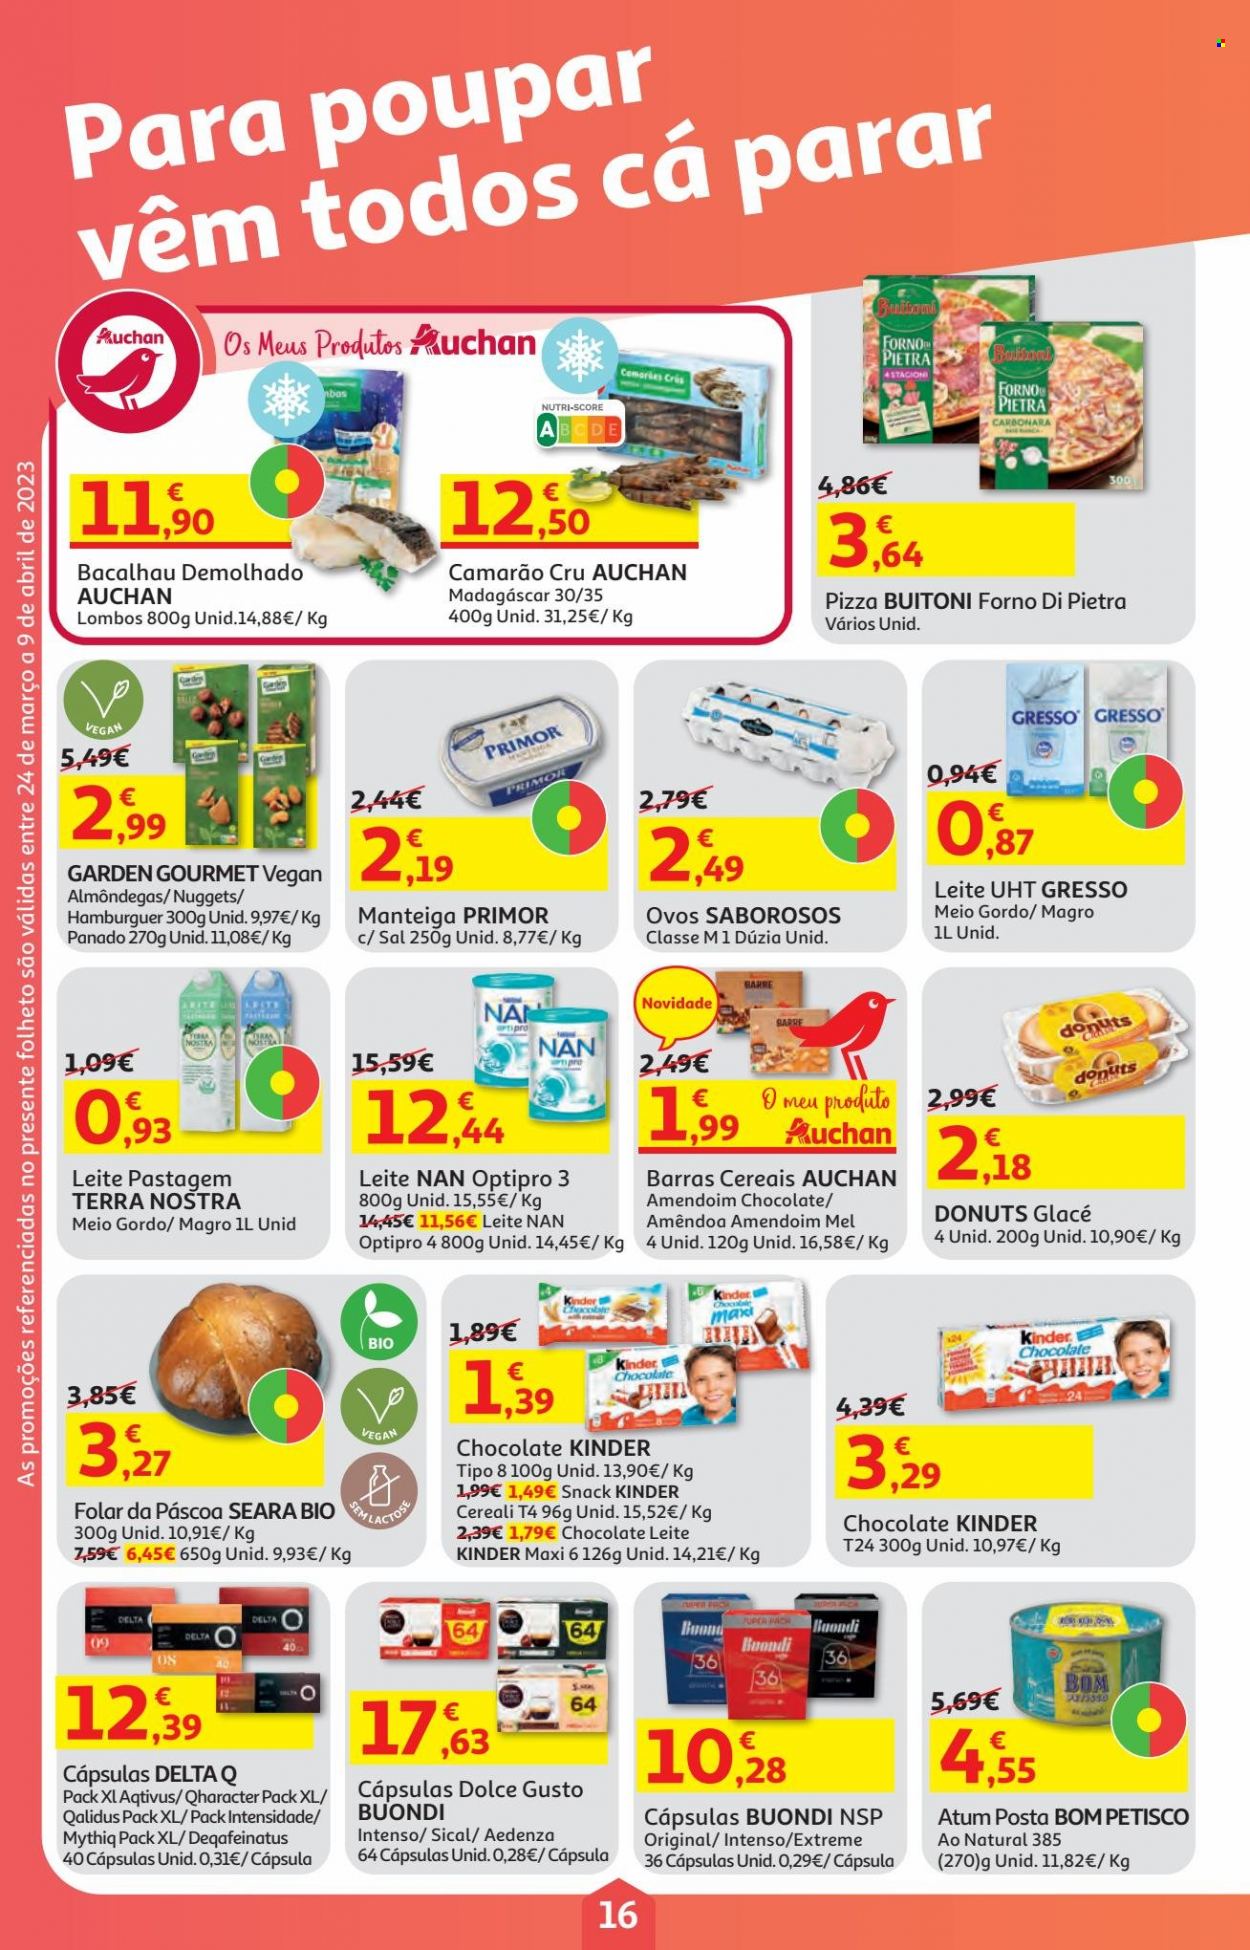 thumbnail - Folheto Auchan - 24.3.2023 - 9.4.2023 - Produtos em promoção - folar, donuts, hamburger, almôndegas, camarão, atum, peixe, pizza, nuggets, Kinder, manteiga, cereais, amêndoa, Delta Q, Dolce Gusto, Sical, leite NAN, leite. Página 16.